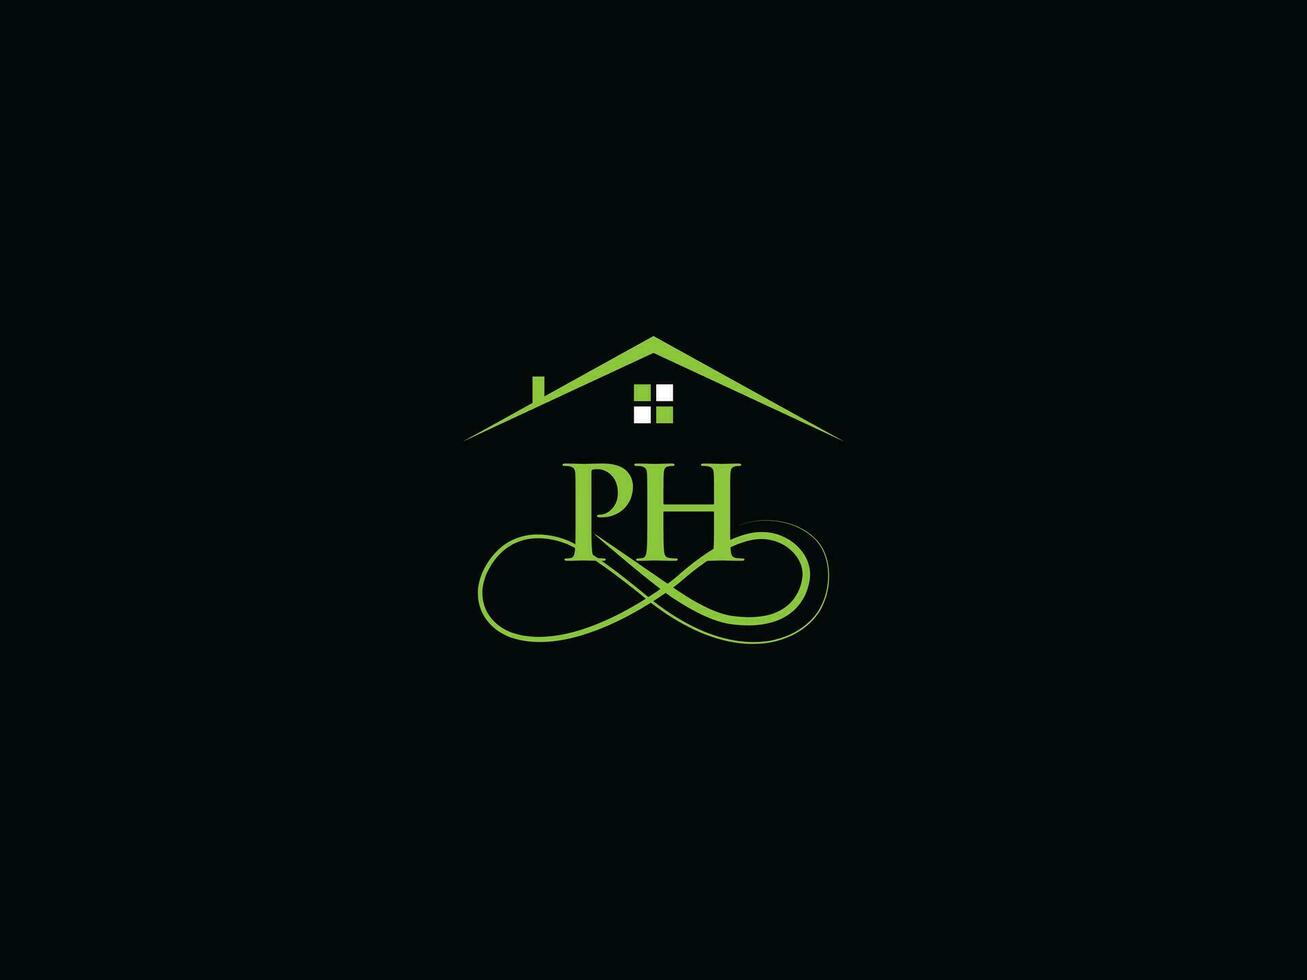 edificio ph lujo logo, real inmuebles ph logo icono vector para usted negocio